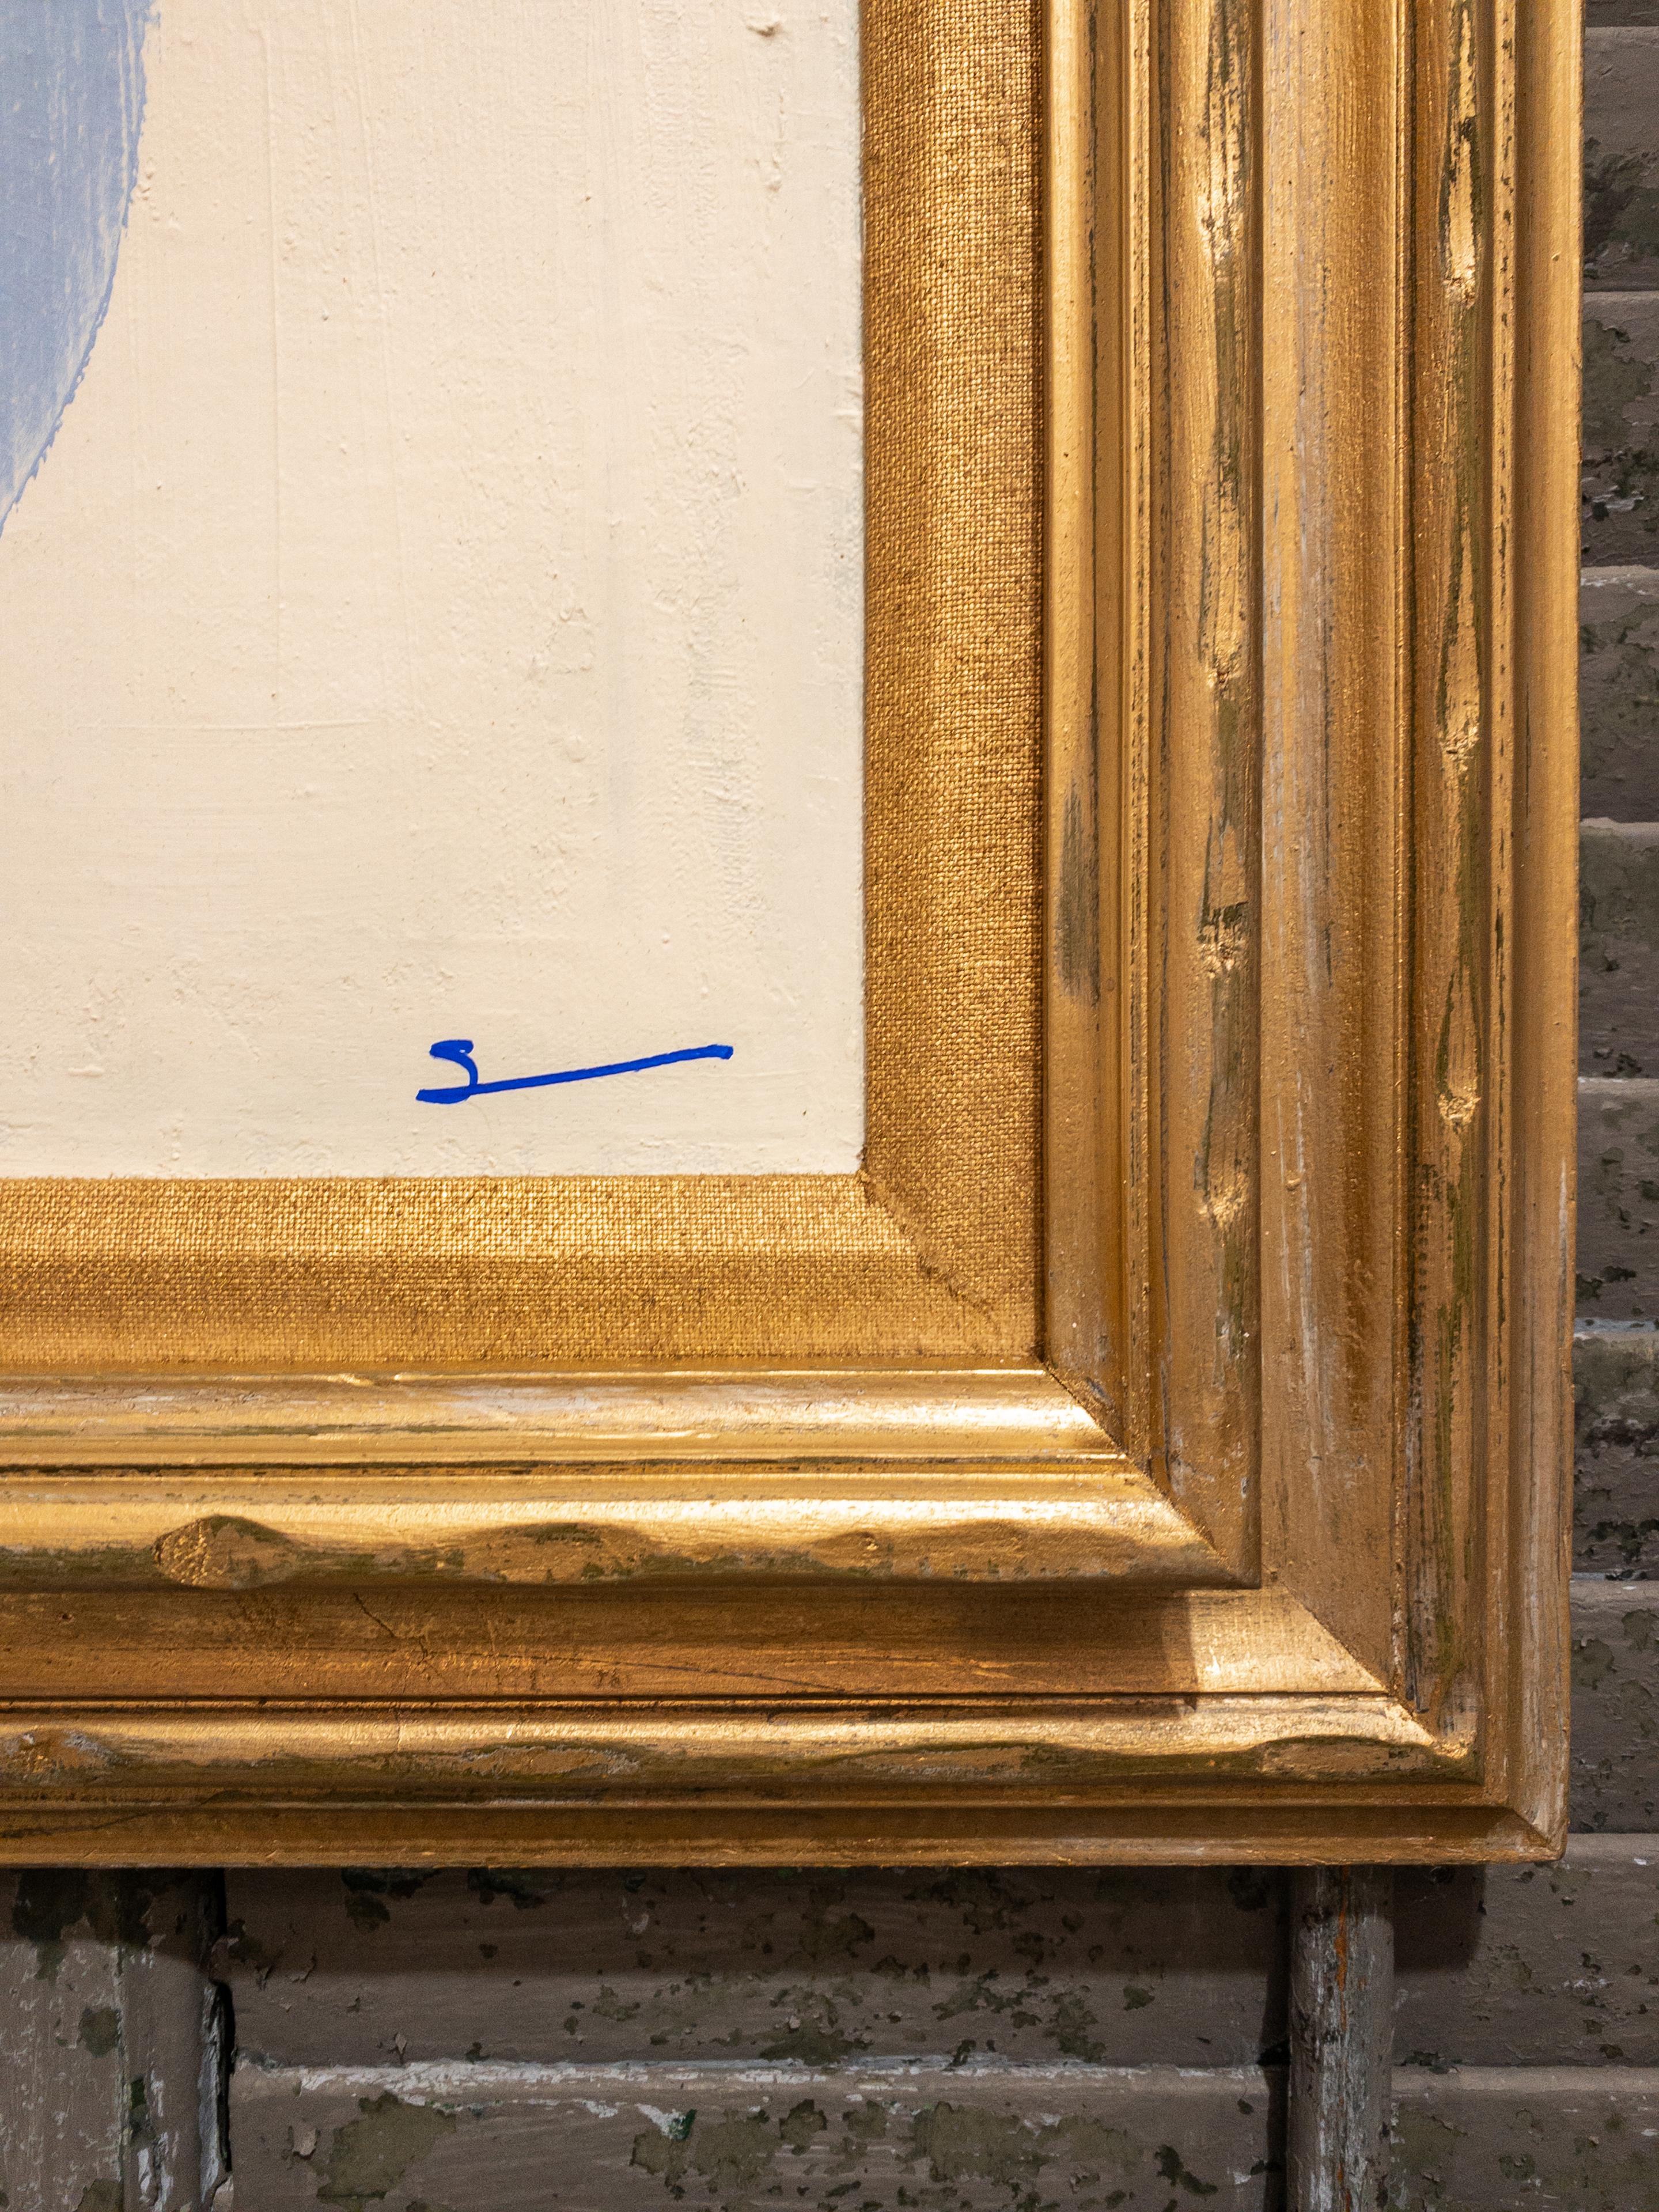 Original Modern Contemporary Französisch Blau und Weiß Gemälde in antiken vergoldeten Rahmen von Houston Texas Künstler Shannon Weir. Weirs künstlerisches Können zeigt sich im harmonischen Zusammenspiel der ruhigen französischen Blautöne und des